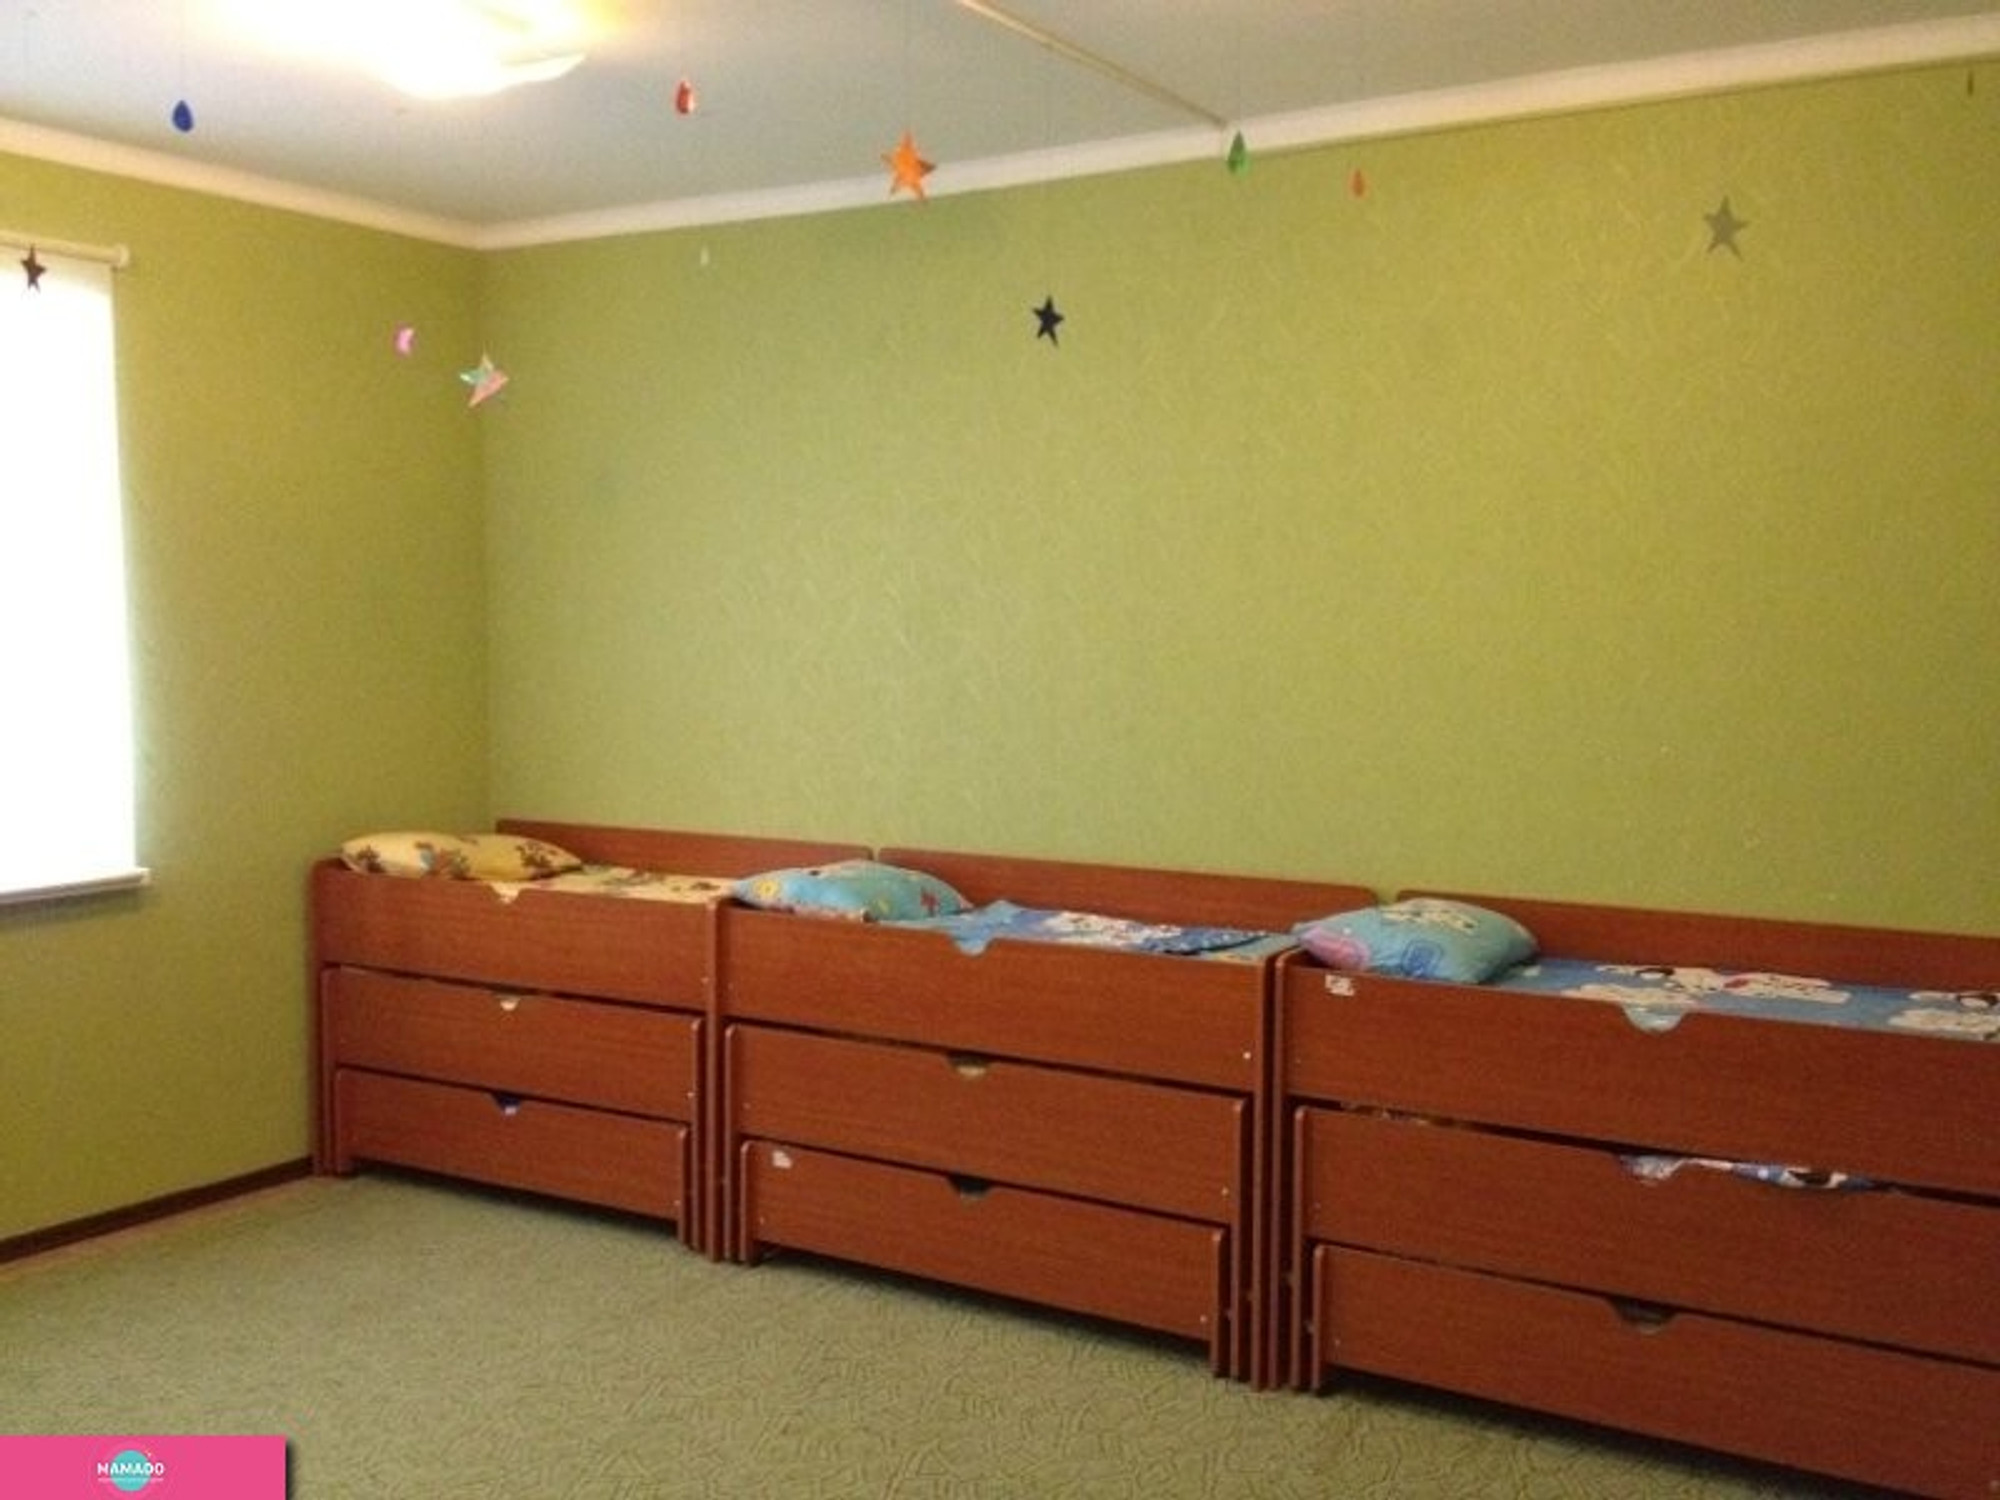 "Фунтик", частный детский сад для детей от 1,6 до 5 лет во Владивостоке 